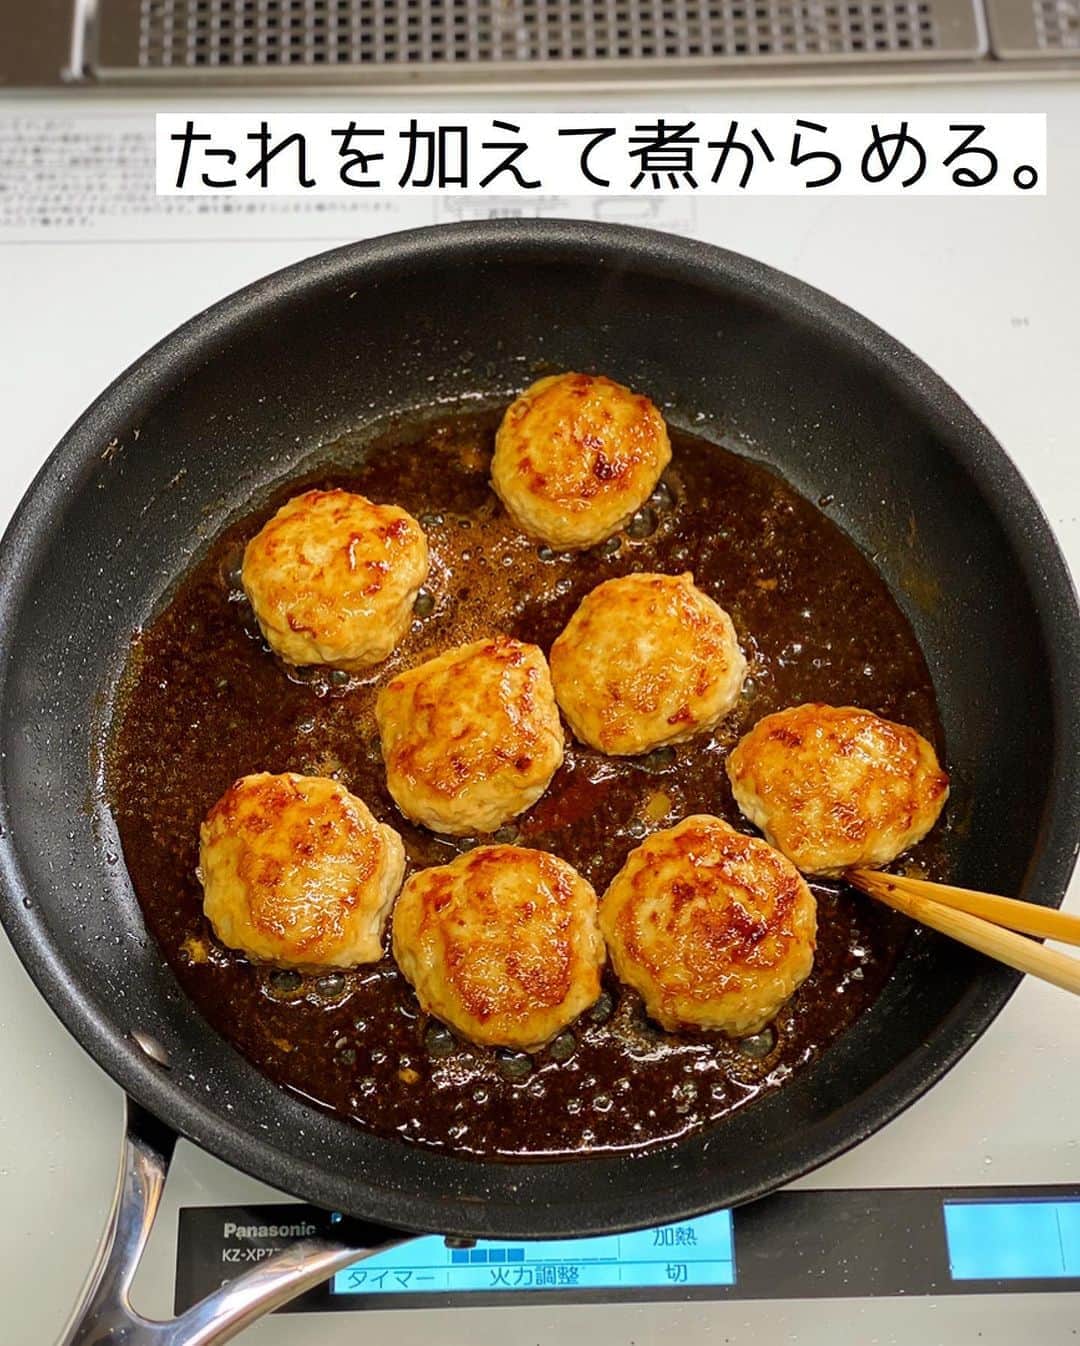 Mizuki【料理ブロガー・簡単レシピ】さんのインスタグラム写真 - (Mizuki【料理ブロガー・簡単レシピ】Instagram)「・﻿ 【#レシピ 】ーーーーーーー﻿ ♡照り焼きチーズつくね♡﻿ (2品献立提案あり)﻿ ーーーーーーーーーーーーー﻿ ﻿ ﻿ ﻿ おはようございます(*^^*)﻿ ﻿ 今日ご紹介させていただくのは﻿ みんな大好き鶏つくね♡﻿ 定番の照り焼きつくねに﻿ とろ〜りチーズをのせました♩﻿ 甘辛だれ×チーズの塩気が﻿ 相性抜群ですよー(*´艸`)﻿ ﻿ たねは一気に混ぜるだけ！の﻿ 超簡単レシピです(*^^*)﻿ よかったらお試し下さいね♩﻿ ﻿ ﻿ ﻿ ＿＿＿＿＿＿＿＿＿＿＿＿＿＿＿＿＿＿＿＿﻿ 【2〜3人分】﻿ ●鶏ひき肉...300g﻿ ●玉ねぎ(みじん切り)...1/4個﻿ ●酒...大1.5﻿ ●片栗粉...小1﻿ ●塩こしょう...少々﻿ スライスチーズ...2枚﻿ サラダ油...小1﻿ ☆醤油・みりん...各大1.5﻿ ☆砂糖...小2﻿ ﻿ 1.ボウルに●を入れてよく混ぜ、8等分の小判形にする。スライスチーズは4等分に切る。☆は合わせておく。﻿ 2.フライパンにサラダ油を中火で熱し、1のたねを焼く。焼き色が付いたら裏返し、フタをして弱めの中火で2分半蒸し焼きにする。﻿ 3.☆を加えて煮からめ、チーズをのせて再びフタをのせ、チーズが溶けるまで加熱する。﻿ ￣￣￣￣￣￣￣￣￣￣￣￣￣￣￣￣￣￣￣￣﻿ ﻿ ﻿ ﻿ 《ポイント》﻿ ♦︎成形する時は手を水で濡らしておくとくっつきません♩﻿ ♦︎チーズはピザ用チーズでもOK♩﻿ ﻿ ﻿ ﻿ ﻿ ﻿ ﻿ ﻿ ＿＿＿＿＿＿＿＿＿＿＿＿＿＿＿﻿ 🥣🥣🥣2品献立提案🥣🥣🥣﻿ ￣￣￣￣￣￣￣￣￣￣￣￣￣￣￣﻿ 【合間に作れるおすすめ副菜】﻿ >レンコンとツナの和風和え(P.100)﻿ >にんじんマカロニサラダ(P.89)﻿ (#Mizukiの2品献立 より)﻿ ﻿ 【献立の段取り】﻿ 副菜をレンジに入れてからメインを焼く🥢﻿ ﻿ ﻿ ﻿ ﻿ ﻿ ﻿ ﻿ ⭐️発売中⭐️3刷重版が決まりました😭﻿ 本当にありがとうございます(涙)﻿ _____________________________________﻿ \15分でいただきます/﻿ 📕#Mizukiの2品献立 📕﻿ (9月24日発売・マガジンハウス)﻿ ￣￣￣￣￣￣￣￣￣￣￣￣￣￣￣￣￣﻿ ﻿ 忙しい私たちには﻿ 2品くらいがちょうどいい！﻿ 『しんどくない献立、考えました』﻿ ￣￣￣￣￣￣￣￣￣￣￣￣￣￣￣￣﻿ ﻿ ーーーーーPART.1 ーーーーー﻿ 【Mizukiのお墨つき！２品献立ベスト10】﻿ 約15分でできる10献立をご紹介！﻿ メインは全部フライパン、副菜はレンチンor混ぜるだけ♡﻿ ﻿ ーーーーーPART.2 ーーーーー﻿ 【フライパンひとつ！今夜のメインおかず】﻿ 献立の主役になる肉や魚のおかず50品！﻿ Part3の副菜と組み合わせれば﻿ 献立のバリエーションが広がりますよ♩﻿ ﻿ ーーーーー PART.3 ーーーーー﻿ 【合間に作れる！ 野菜別かんたん副菜】﻿ レンチンor和えるだけの副菜レシピを﻿ 素材別にたっぷり収録♩﻿ ﻿ ーーーーー番外編ーーーーー﻿ 【ひとつで満足！ご飯＆麺】﻿ 【具だくさん！おかずスープ】﻿ 【オーブンいらずのおやつレシピ】﻿ ￣￣￣￣￣￣￣￣￣￣￣￣￣￣￣￣￣￣﻿ (ハイライトにリンク🔗あります💗)﻿ ﻿ ﻿ ﻿ ﻿ ﻿ ﻿ レシピを作って下さった際や﻿ レシピ本についてのご投稿には﻿ タグ付け( @mizuki_31cafe )して﻿ お知らせいただけると嬉しいです😊💕﻿ ﻿ ﻿ ﻿ ﻿ ﻿ ﻿ #鶏つくね#つくね#チーズ#甘辛#Mizuki#簡単レシピ#時短レシピ#節約レシピ#料理#フーディーテーブル#マカロニメイト#おうちごはん#デリスタグラマー#料理好きな人と繋がりたい#食べ物#料理記録#おうちごはんlover#写真好きな人と繋がりたい#foodpic#cooking#recipe#lin_stagrammer#foodporn#yummy#f52grams#照り焼きチーズつくねm」10月23日 7時24分 - mizuki_31cafe